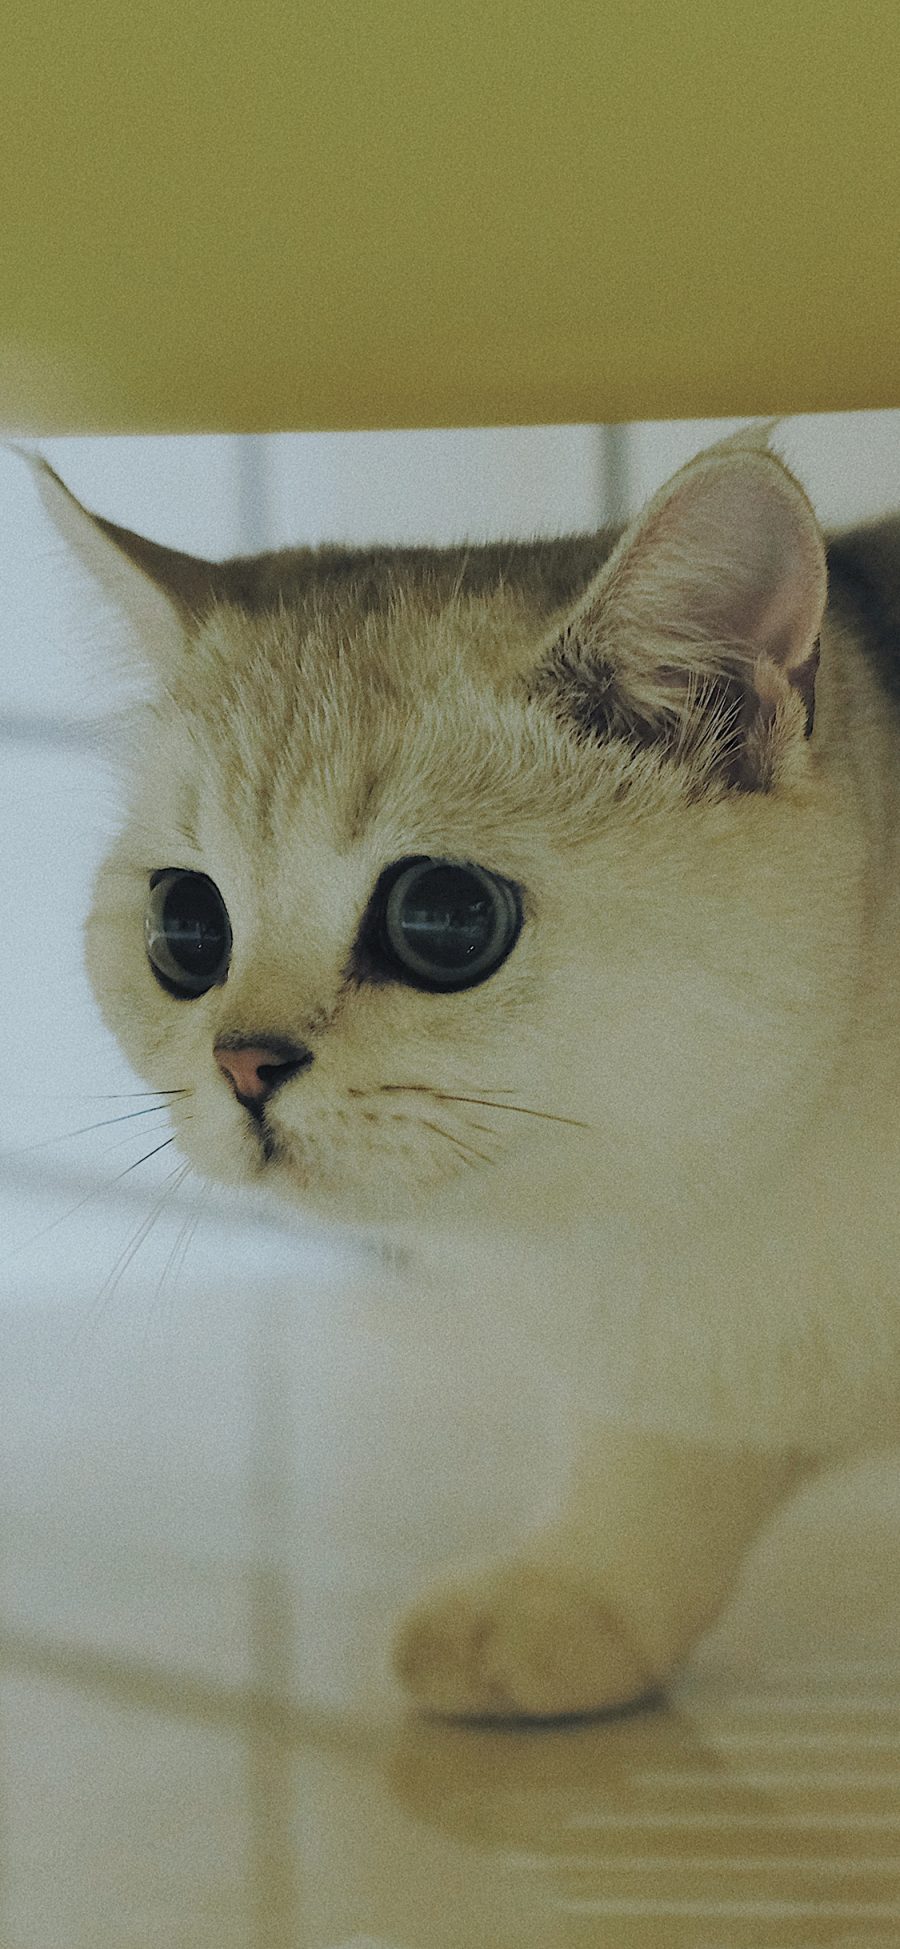 [2436×1125]宠物 喵星人 猫咪 可爱 大眼睛 苹果手机壁纸图片